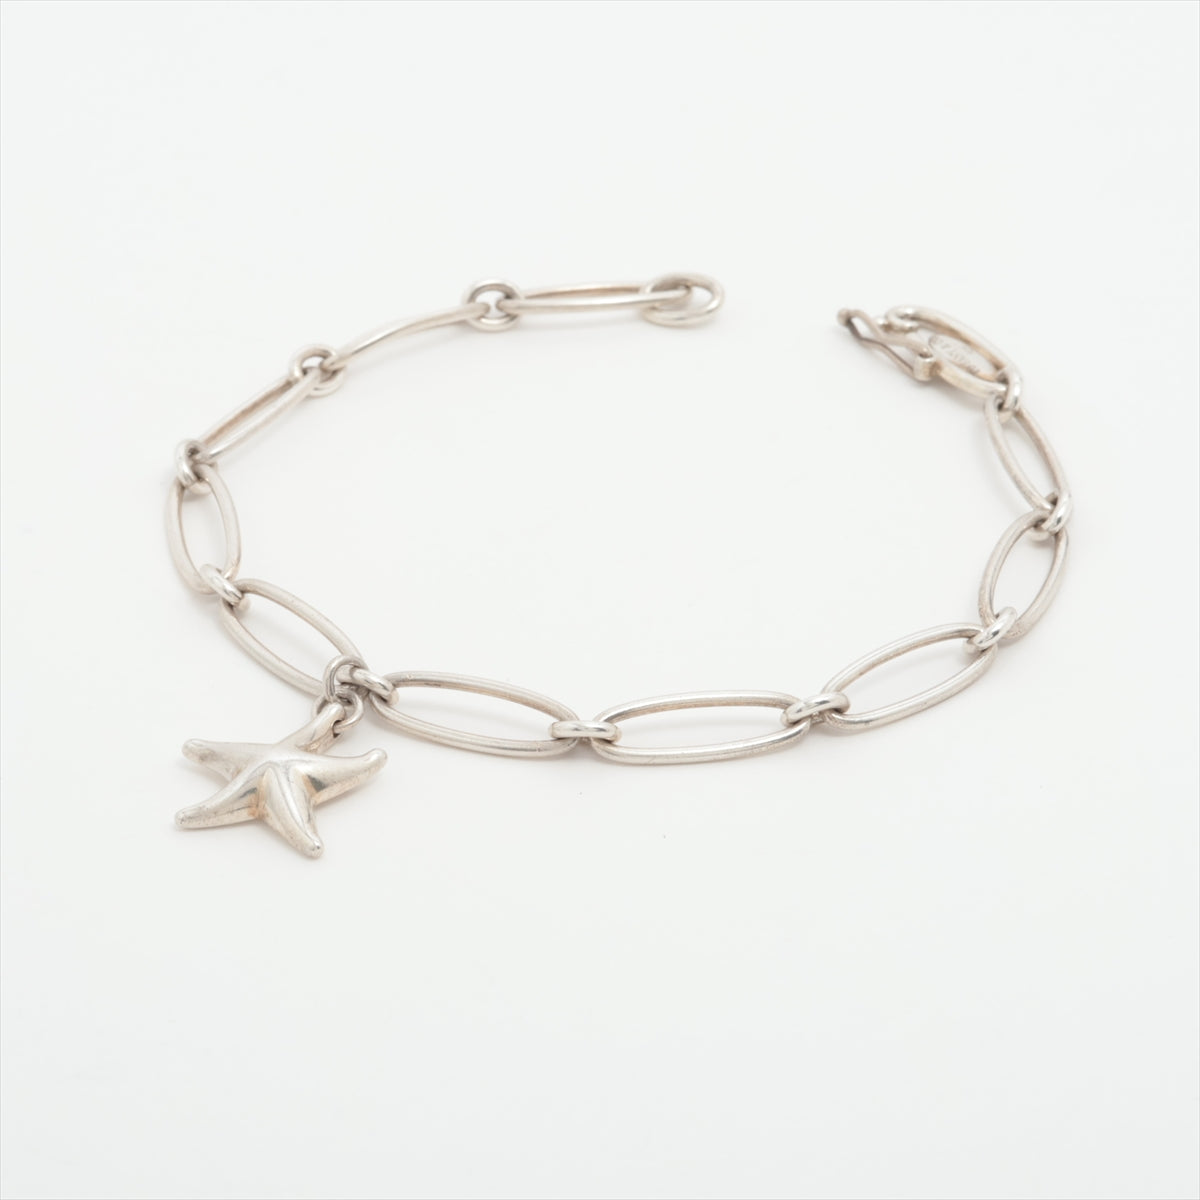 Tiffany Starfish Bracelet 925 7.8g Silver